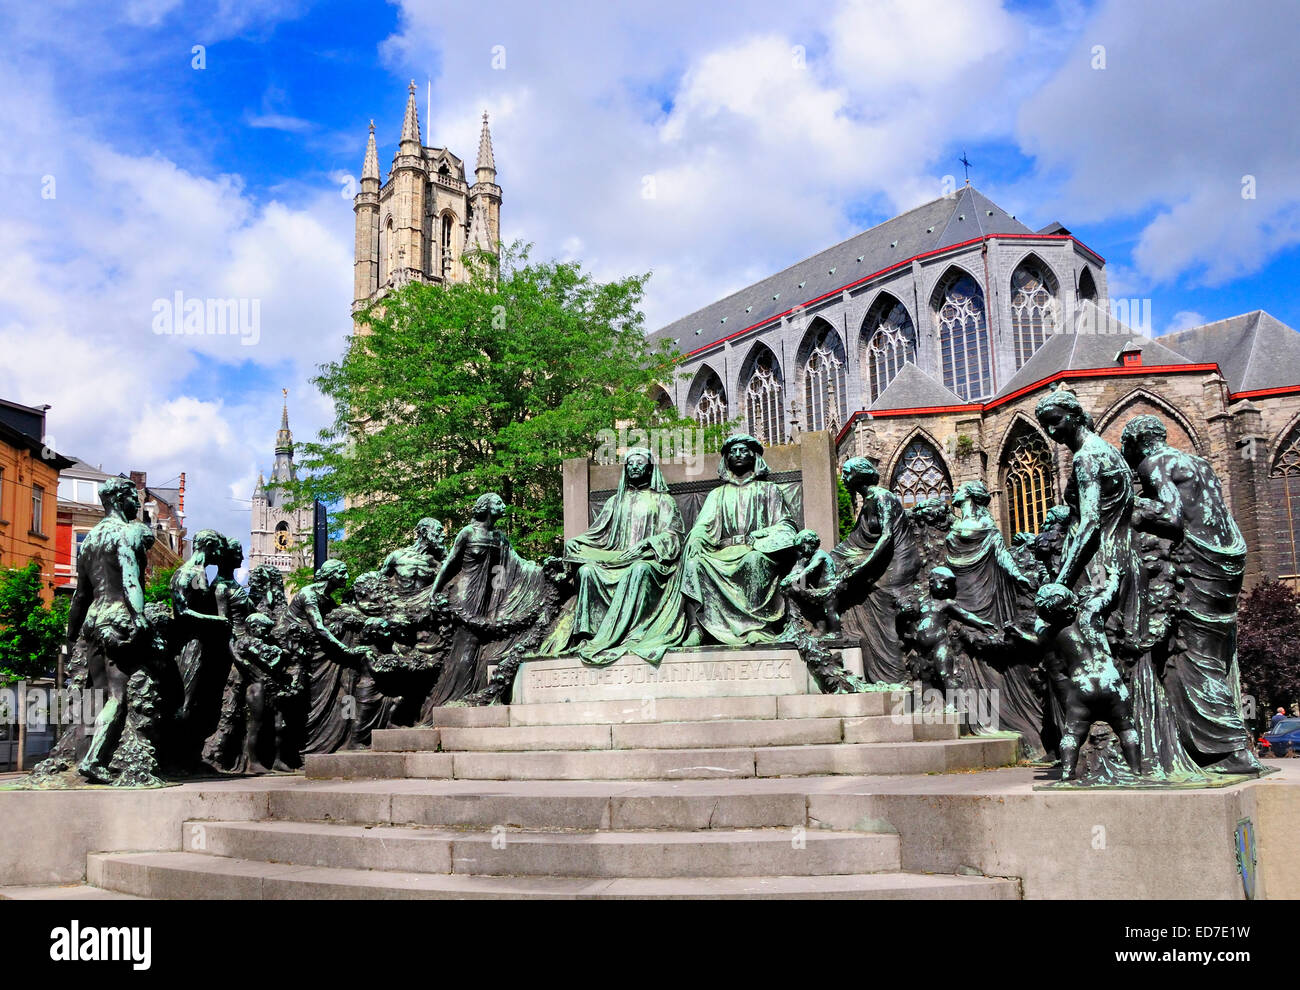 Ghent / Gent, Belgium. Monument to brothers Hubert and Johann Van Eyck in Gerhaard de Duivel Straat (street) Stock Photo